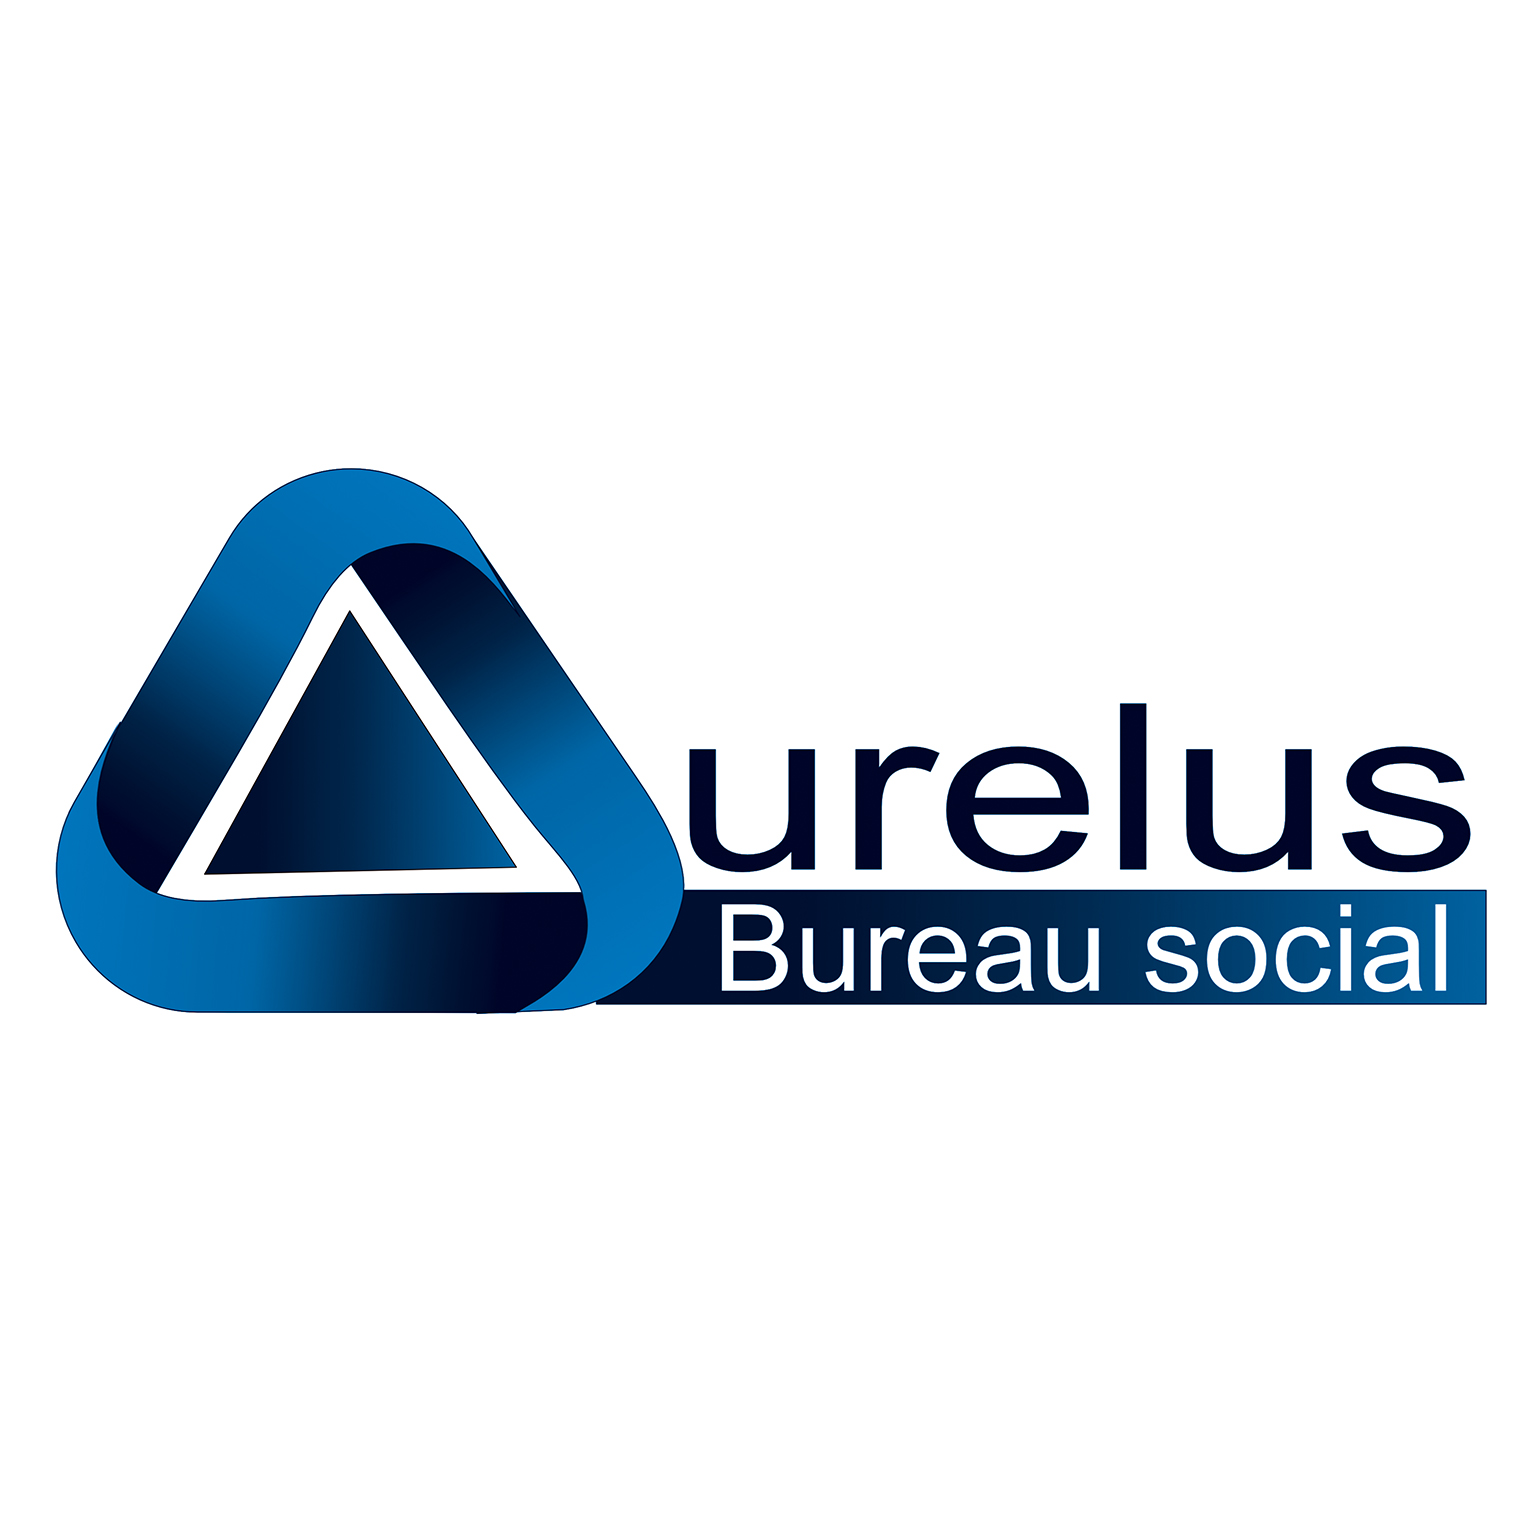 Aurelus - Bureau social